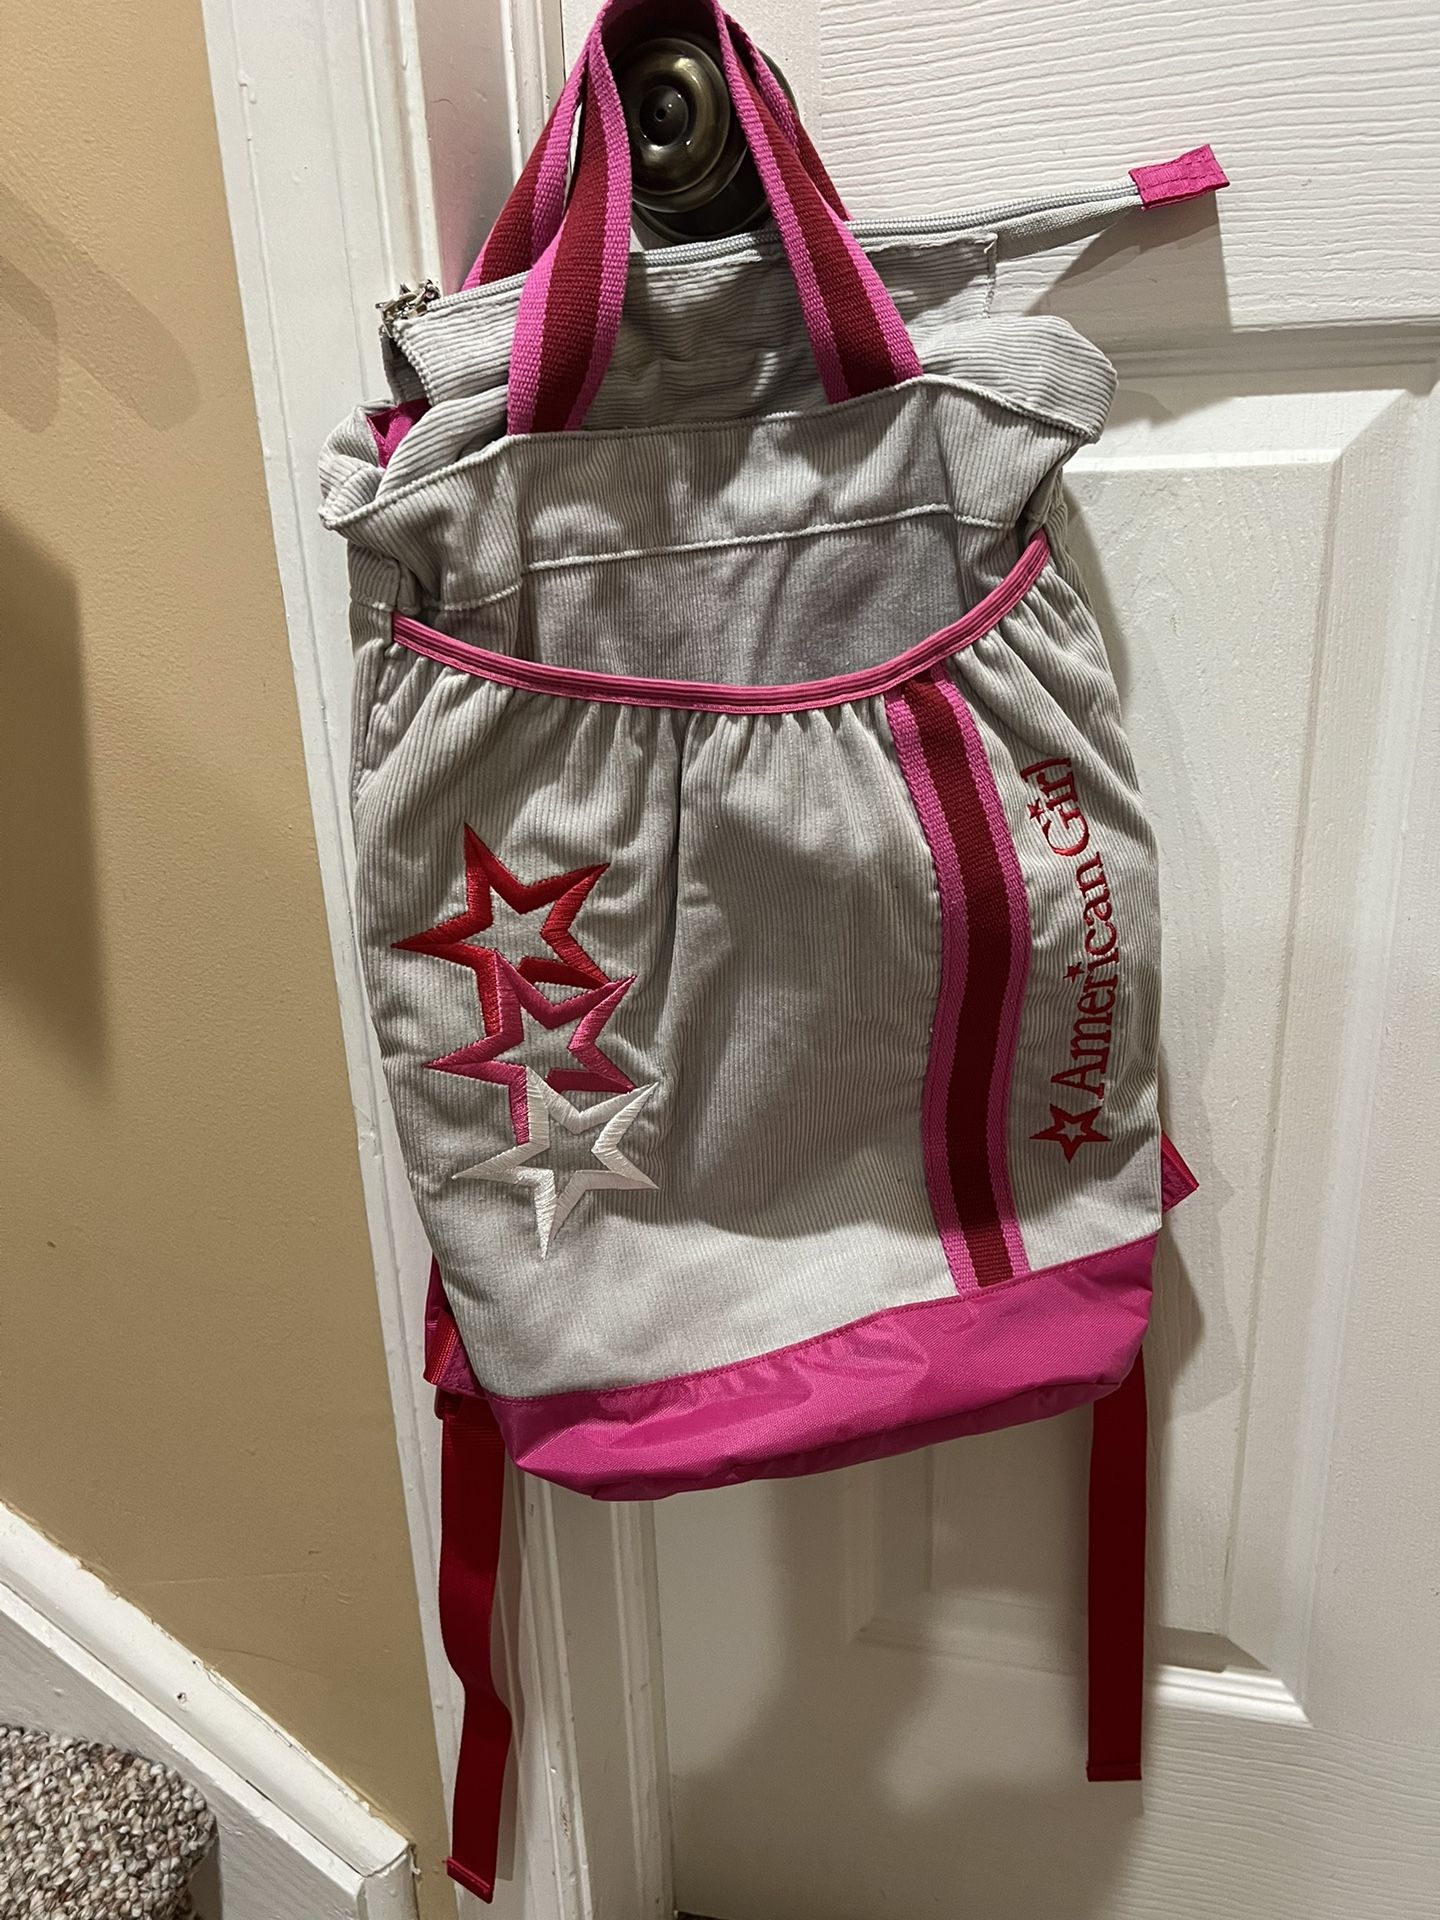 American Girl Backpack Carrier for AG Doll